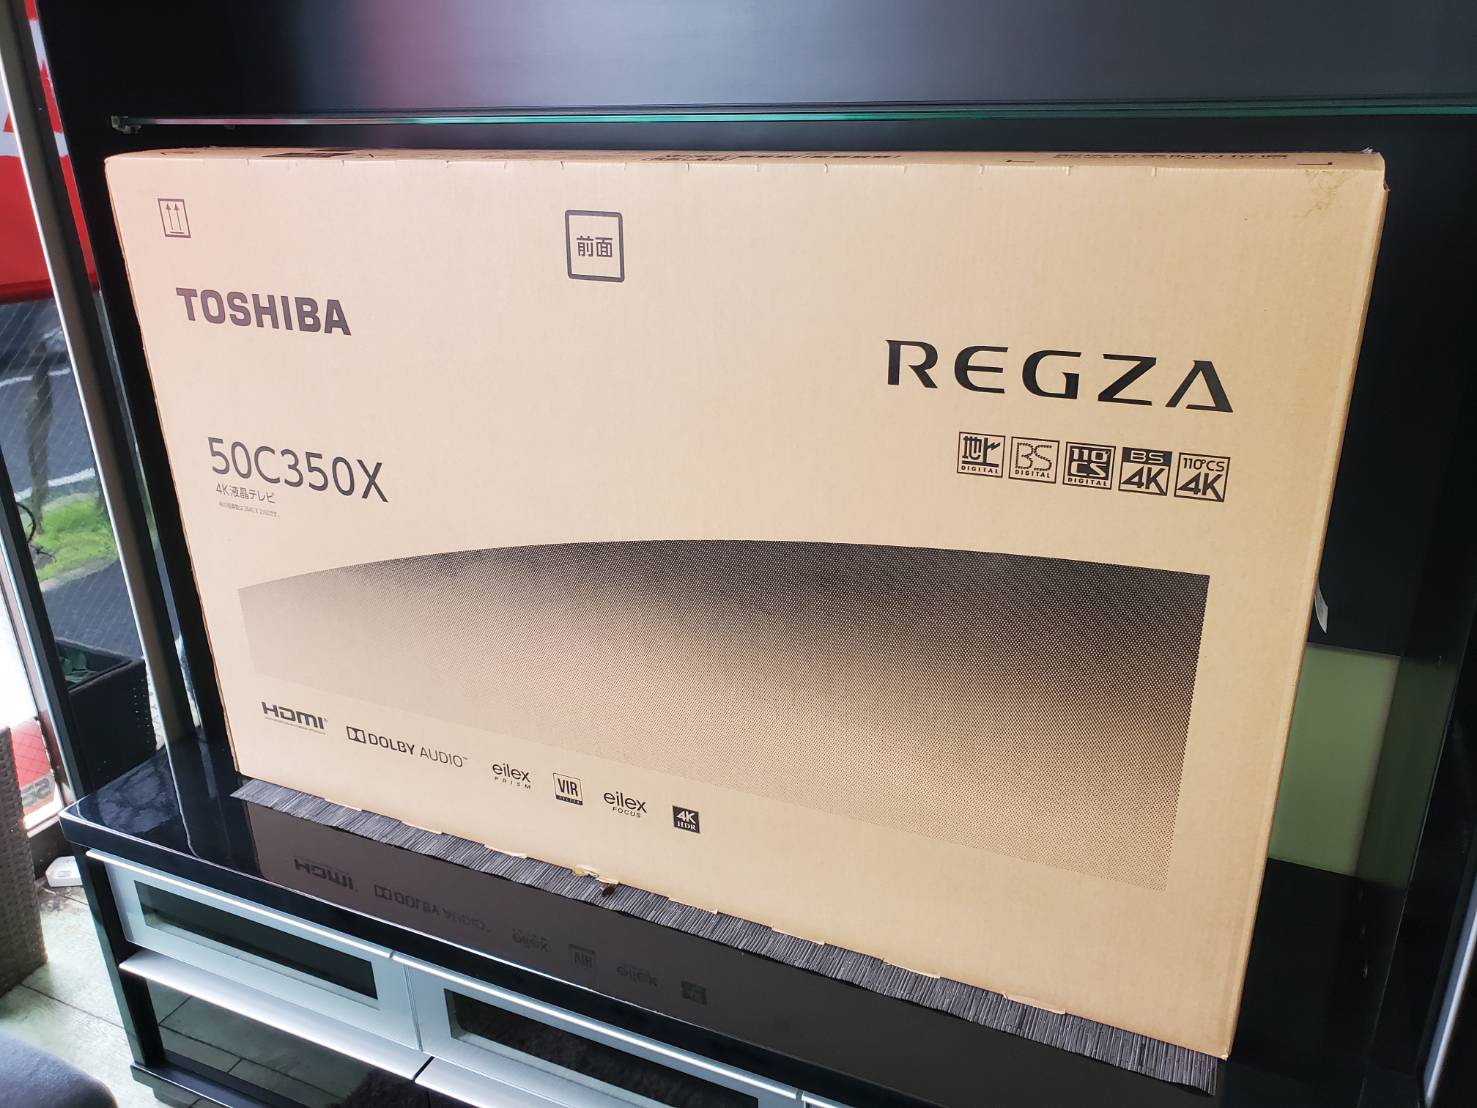 新品未開封】東芝REGZA 4K液晶テレビ 50C350X 50インチ - テレビ/映像機器